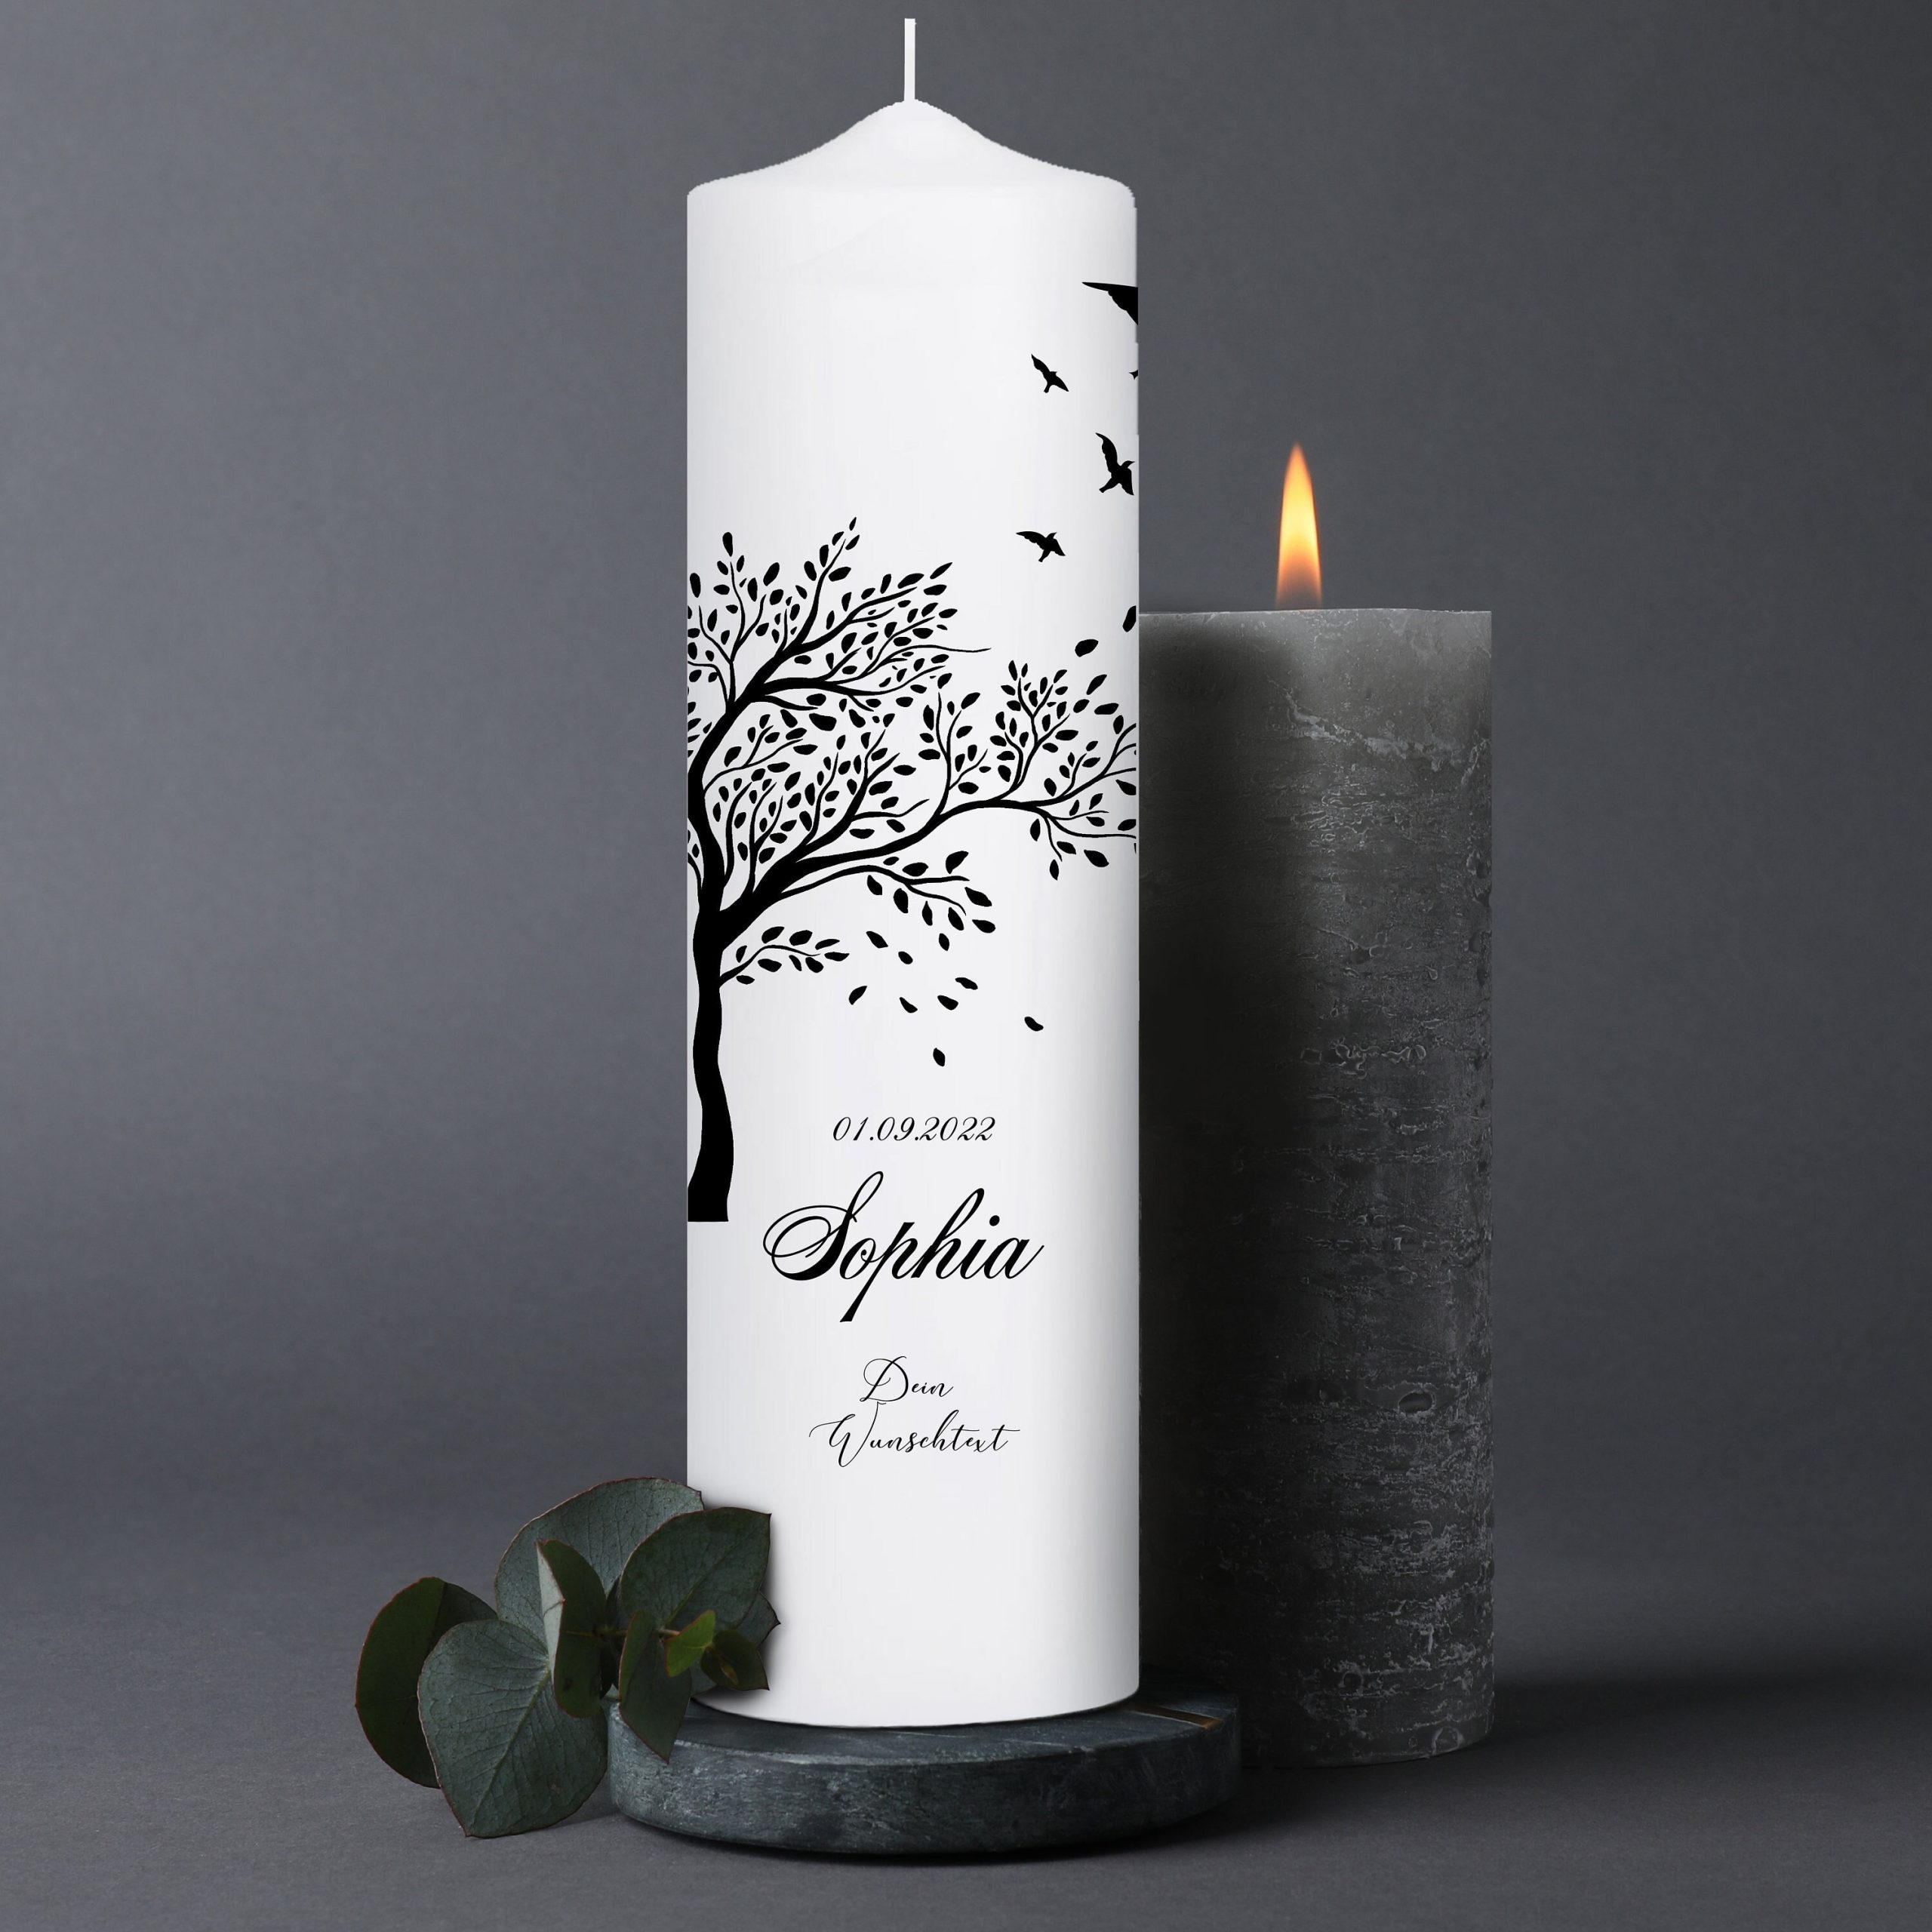 Trauerkerze Blumenkranz Baum Lebensbaum Vögel personalisiert mit Namen Datum Trauerspruch Kerze